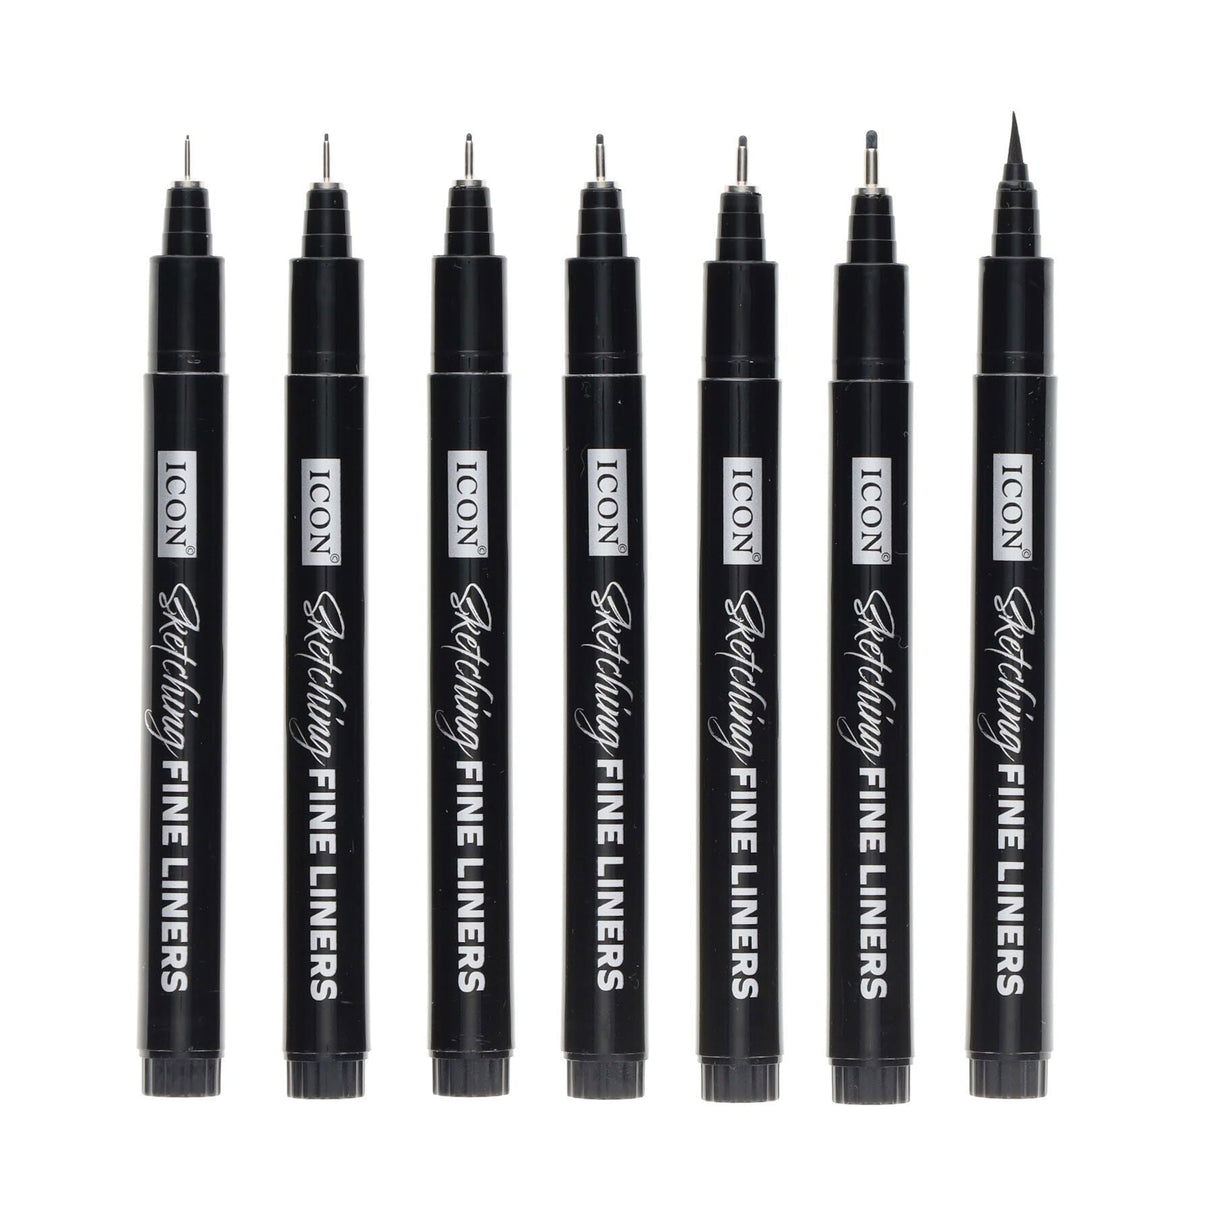 Sketching Fineliner Pens - Pack of 7 | Stationery Shop UK